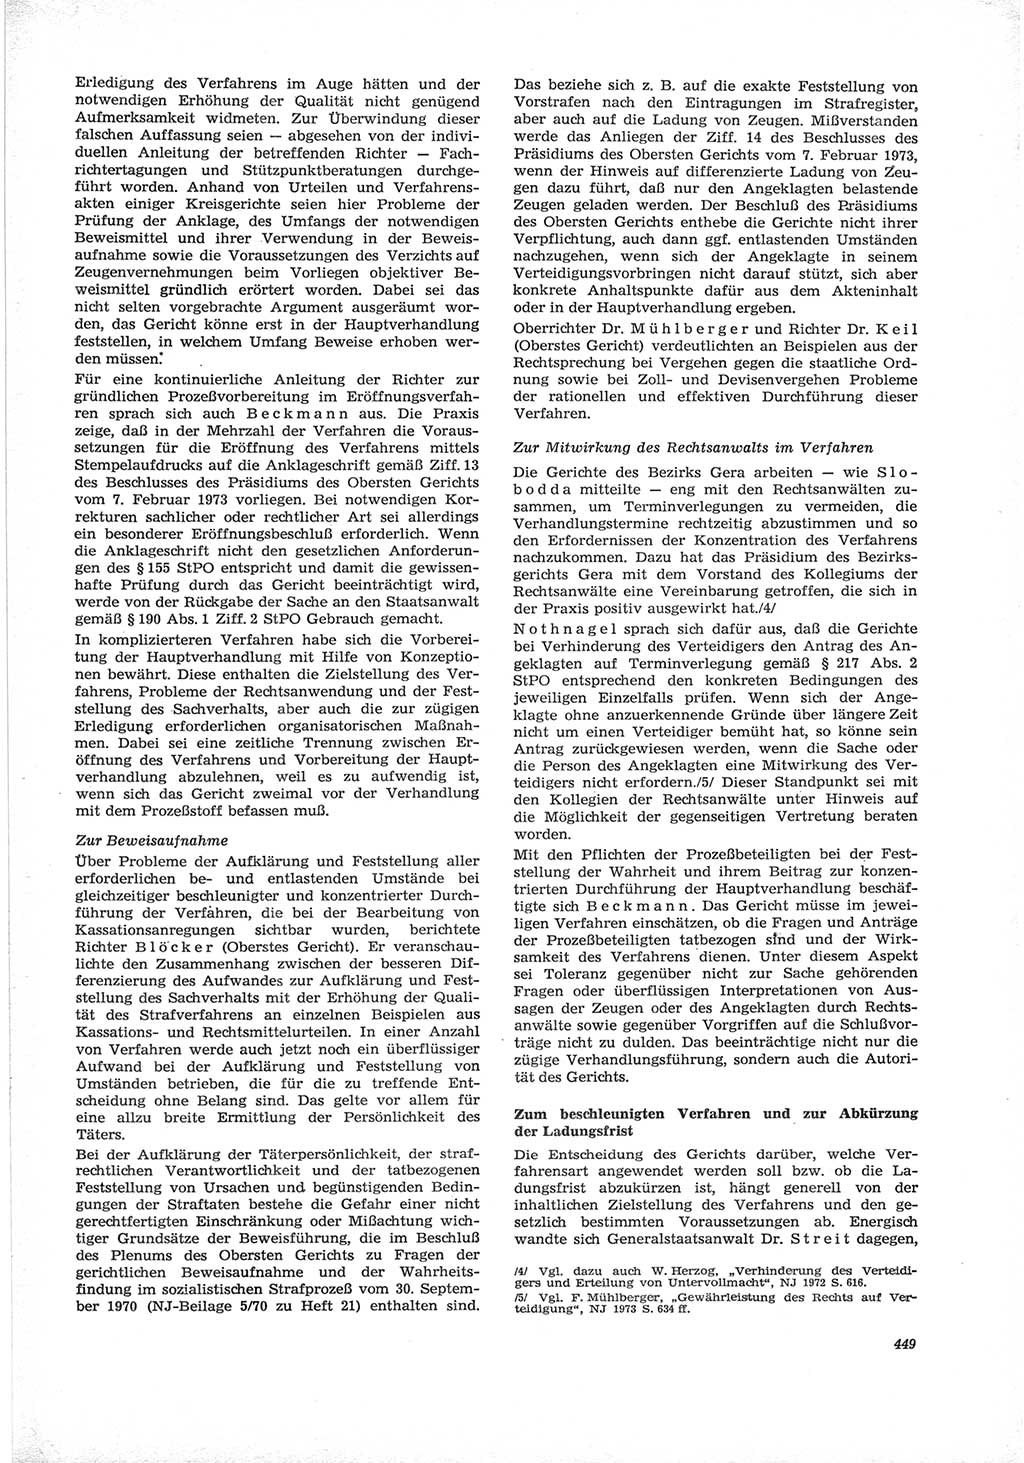 Neue Justiz (NJ), Zeitschrift für Recht und Rechtswissenschaft [Deutsche Demokratische Republik (DDR)], 28. Jahrgang 1974, Seite 449 (NJ DDR 1974, S. 449)